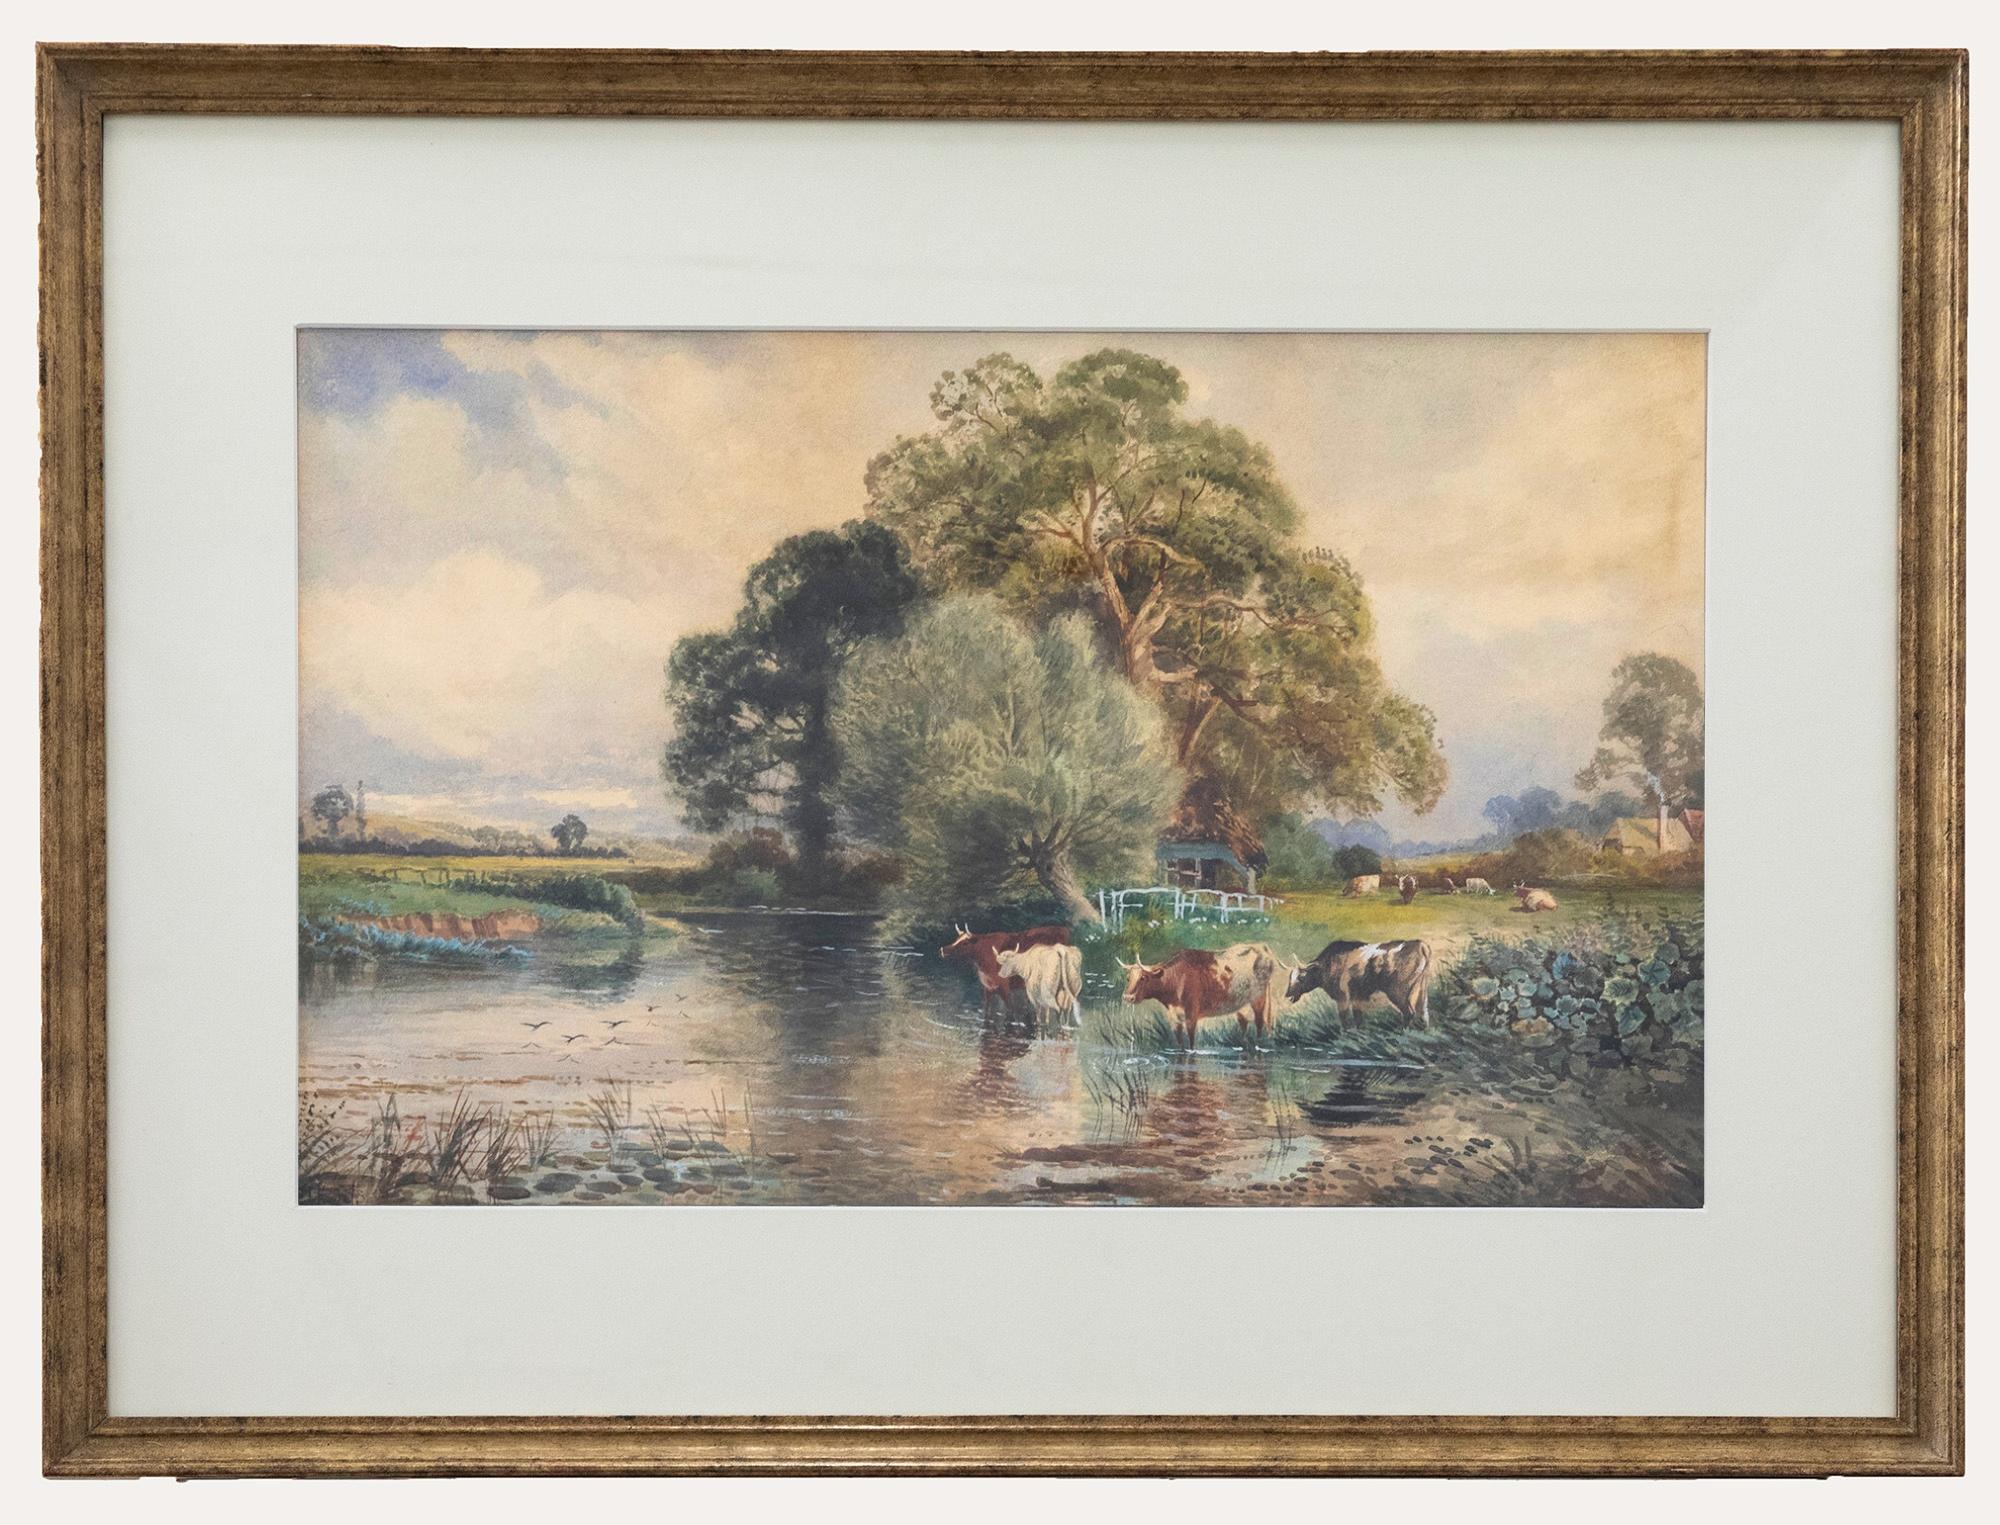 C.J. Keats Landscape Art - Cecil Jack Keats - Late 19th Century Watercolour, Cattle Watering in a River